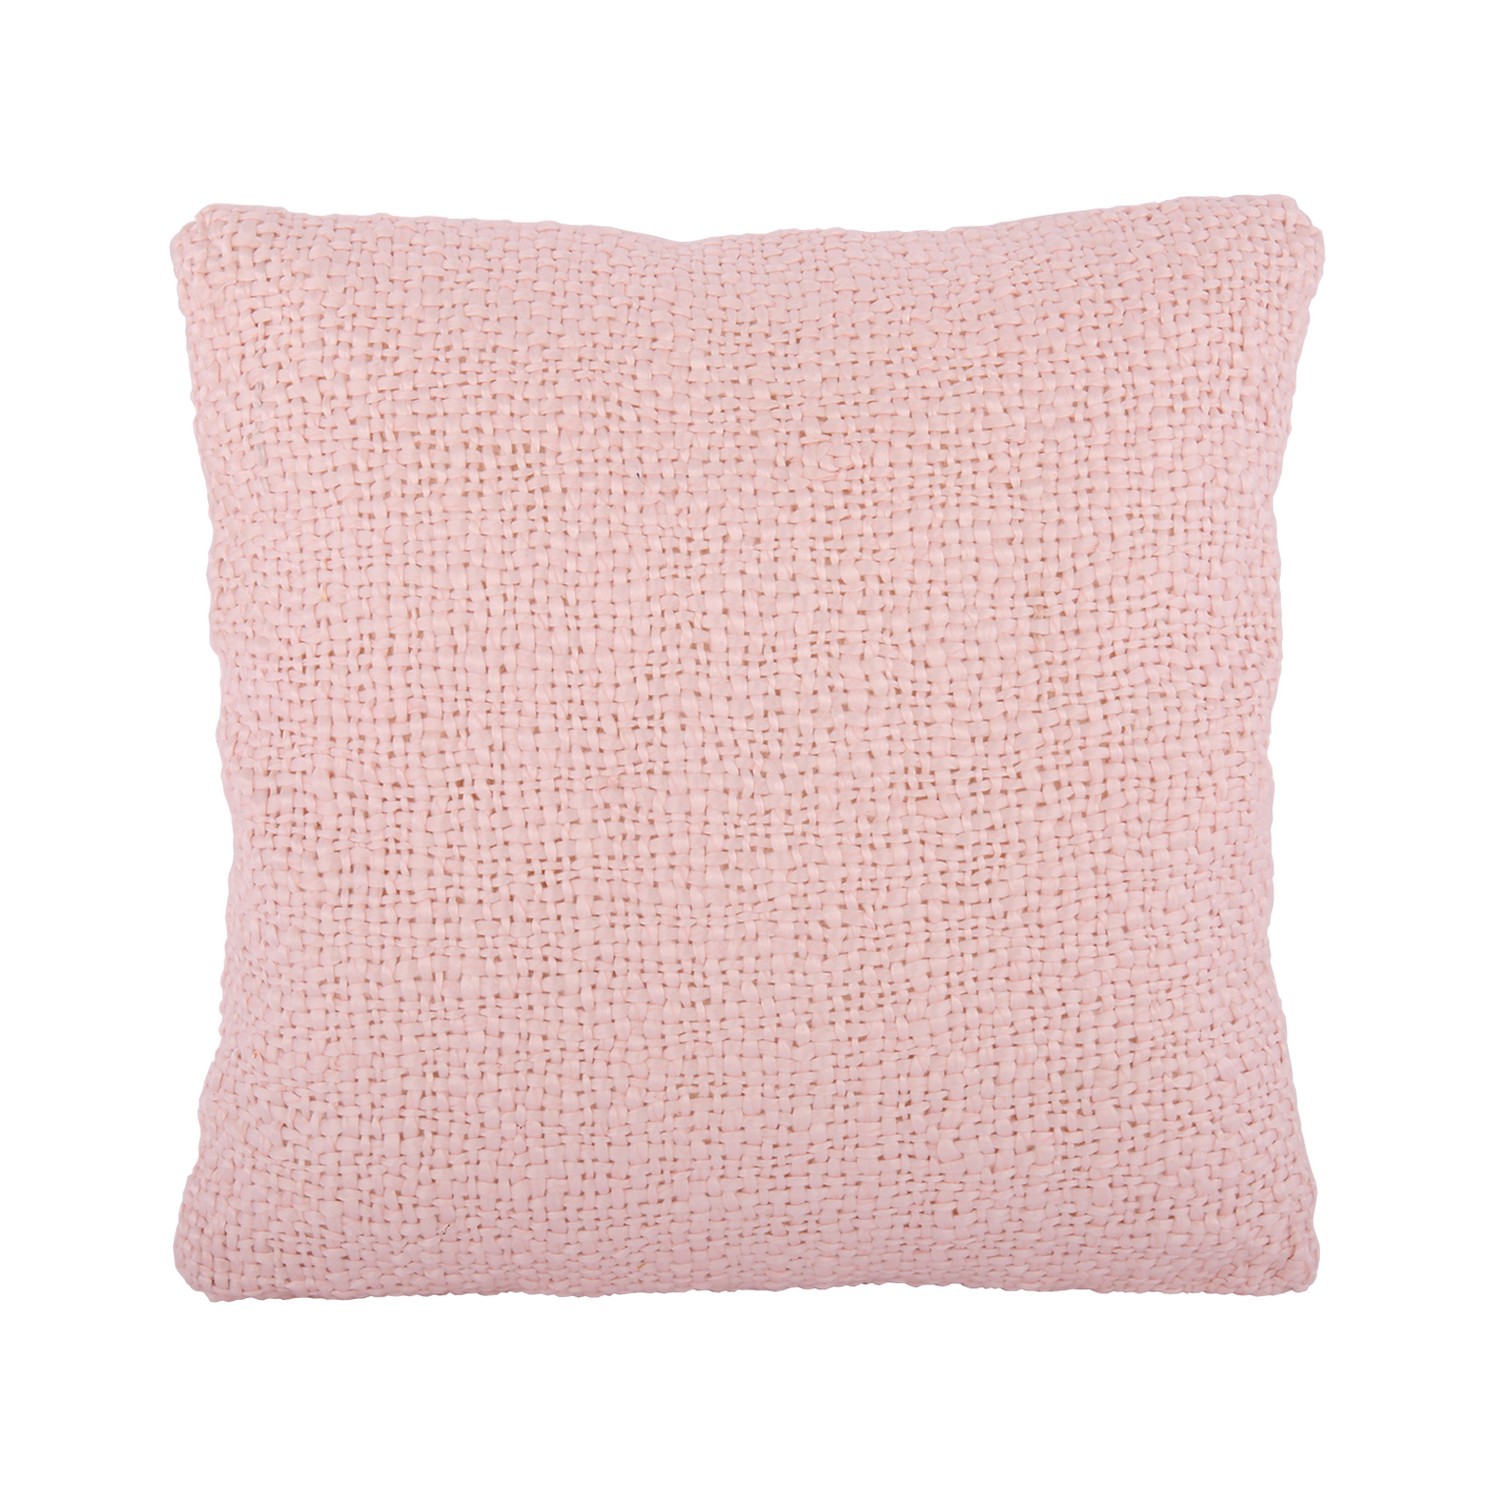 Růžový polštář s výplní Ibiza blush pink - 45*45cm Collectione